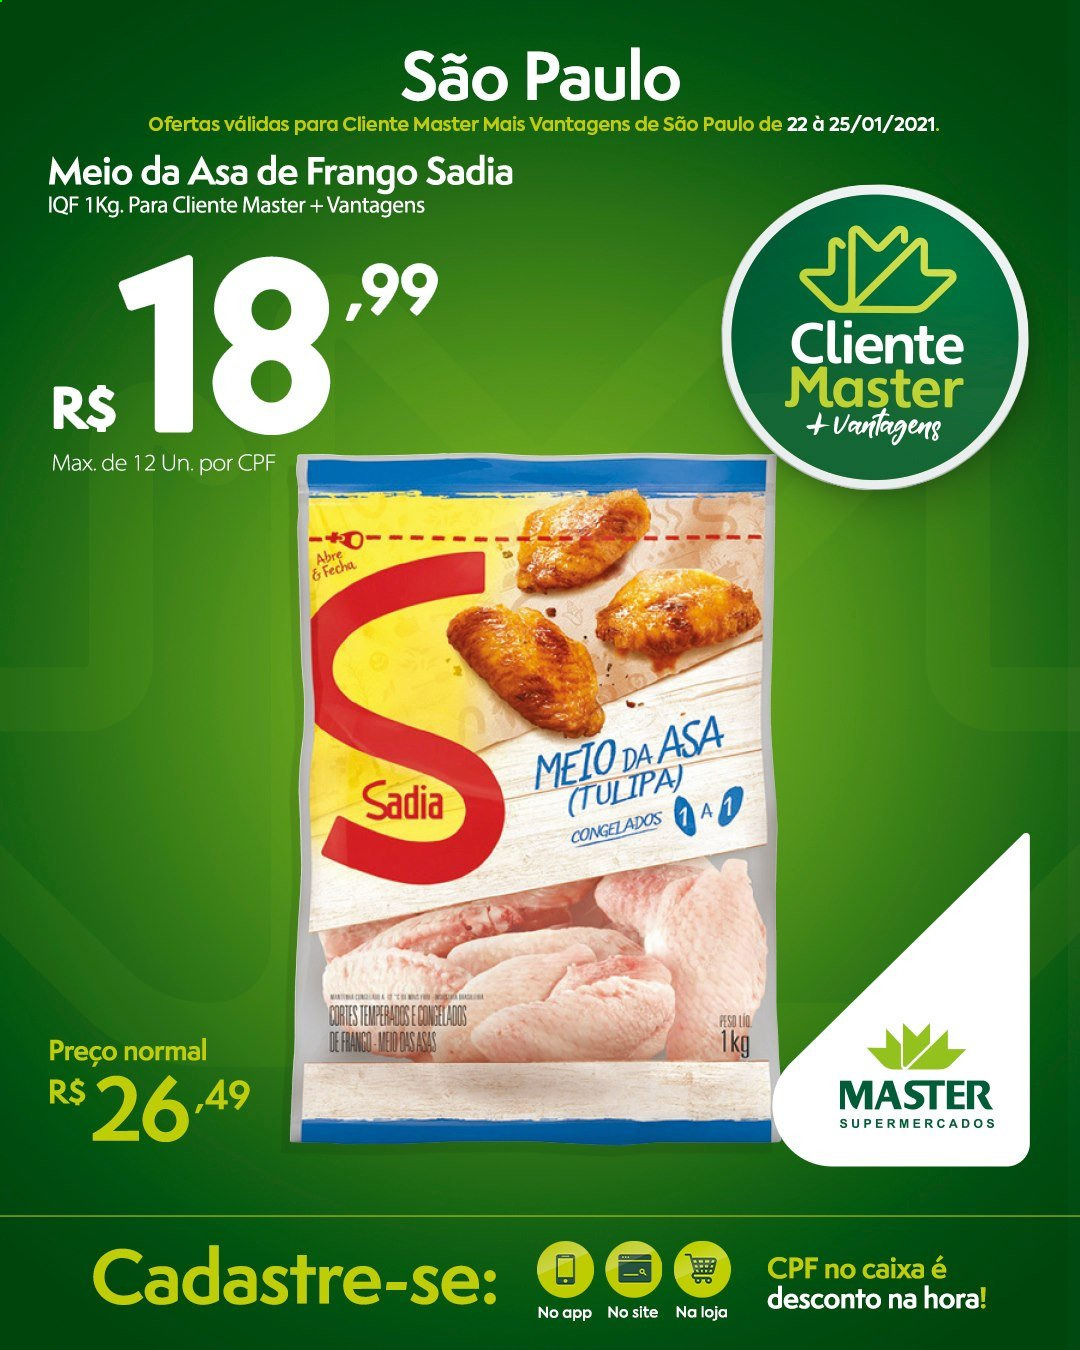 Encarte Master Supermercados  - 22.01.2021 - 25.01.2021.